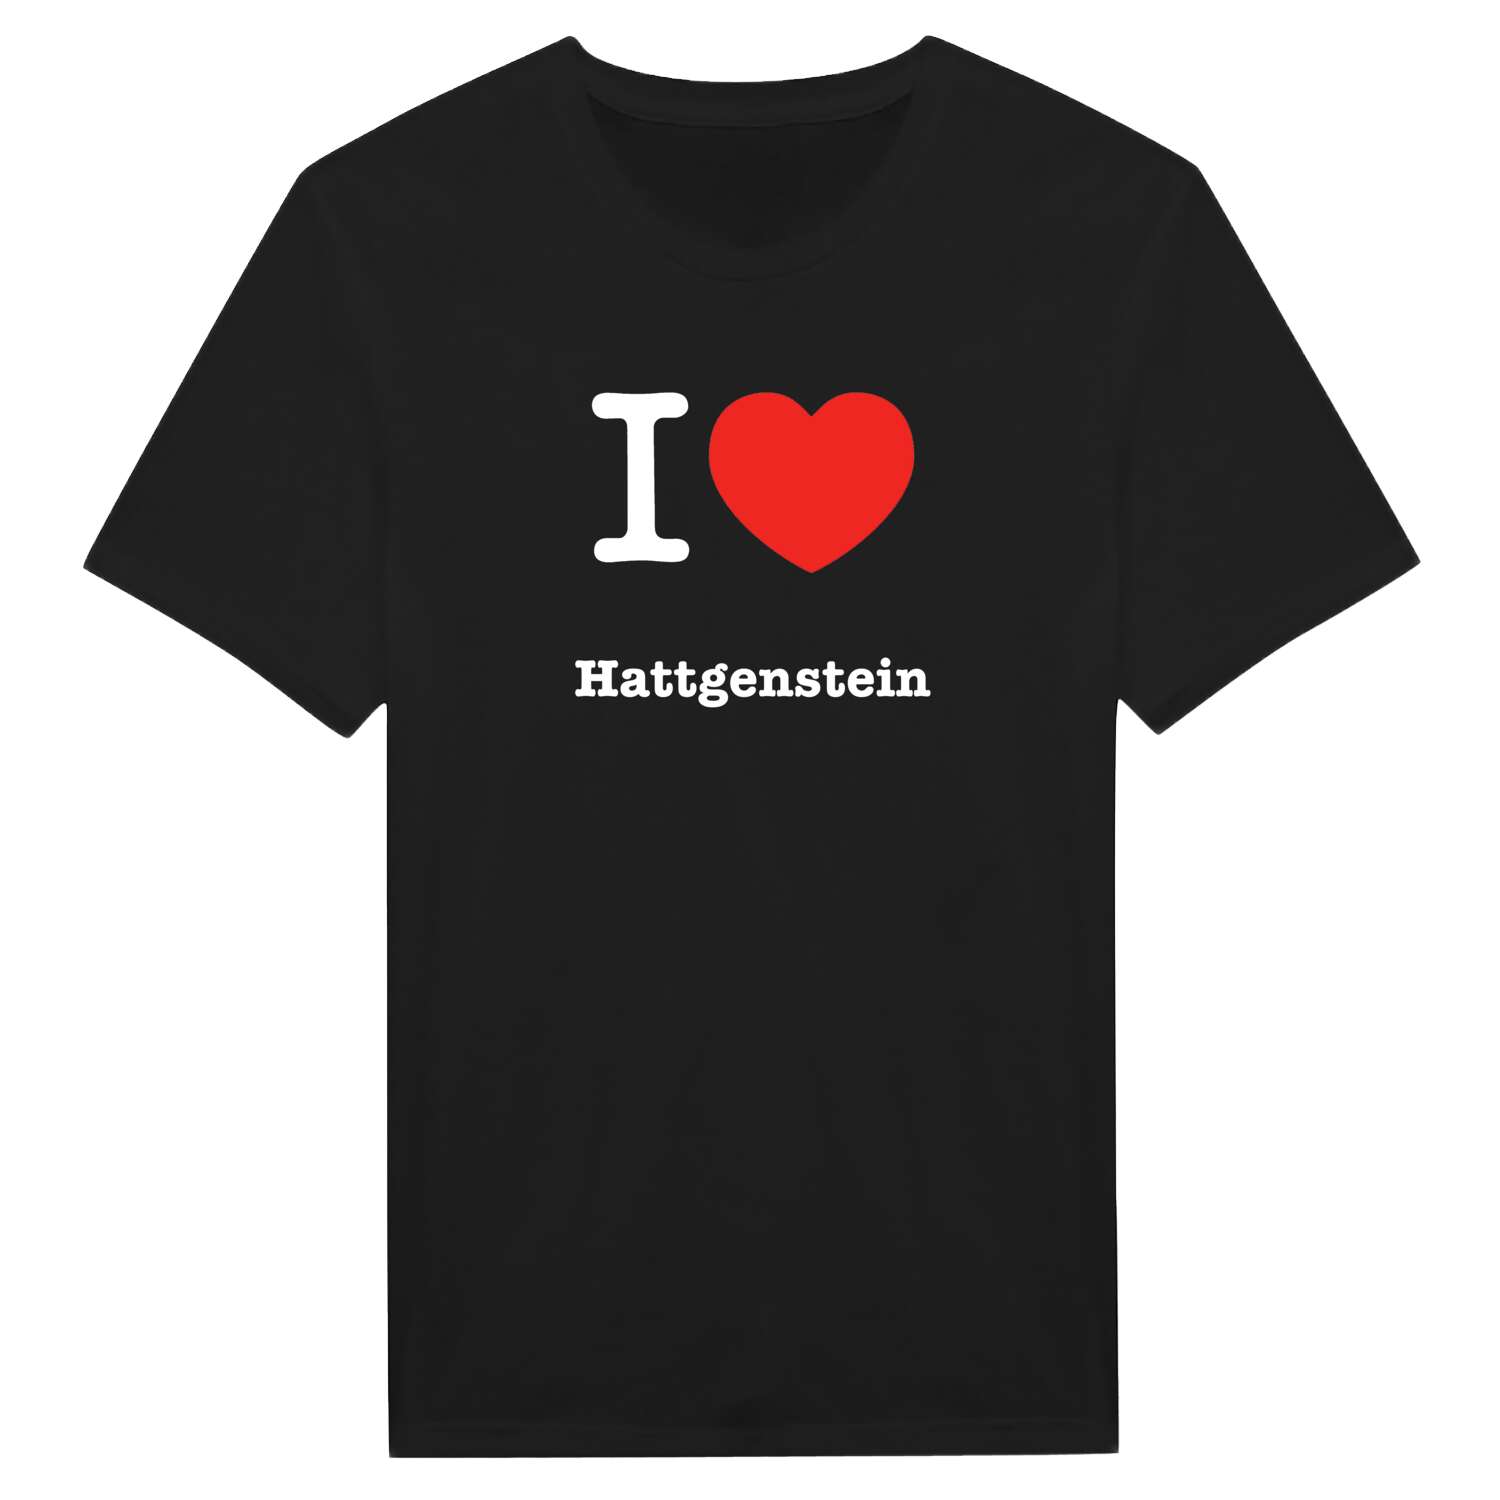 Hattgenstein T-Shirt »I love«